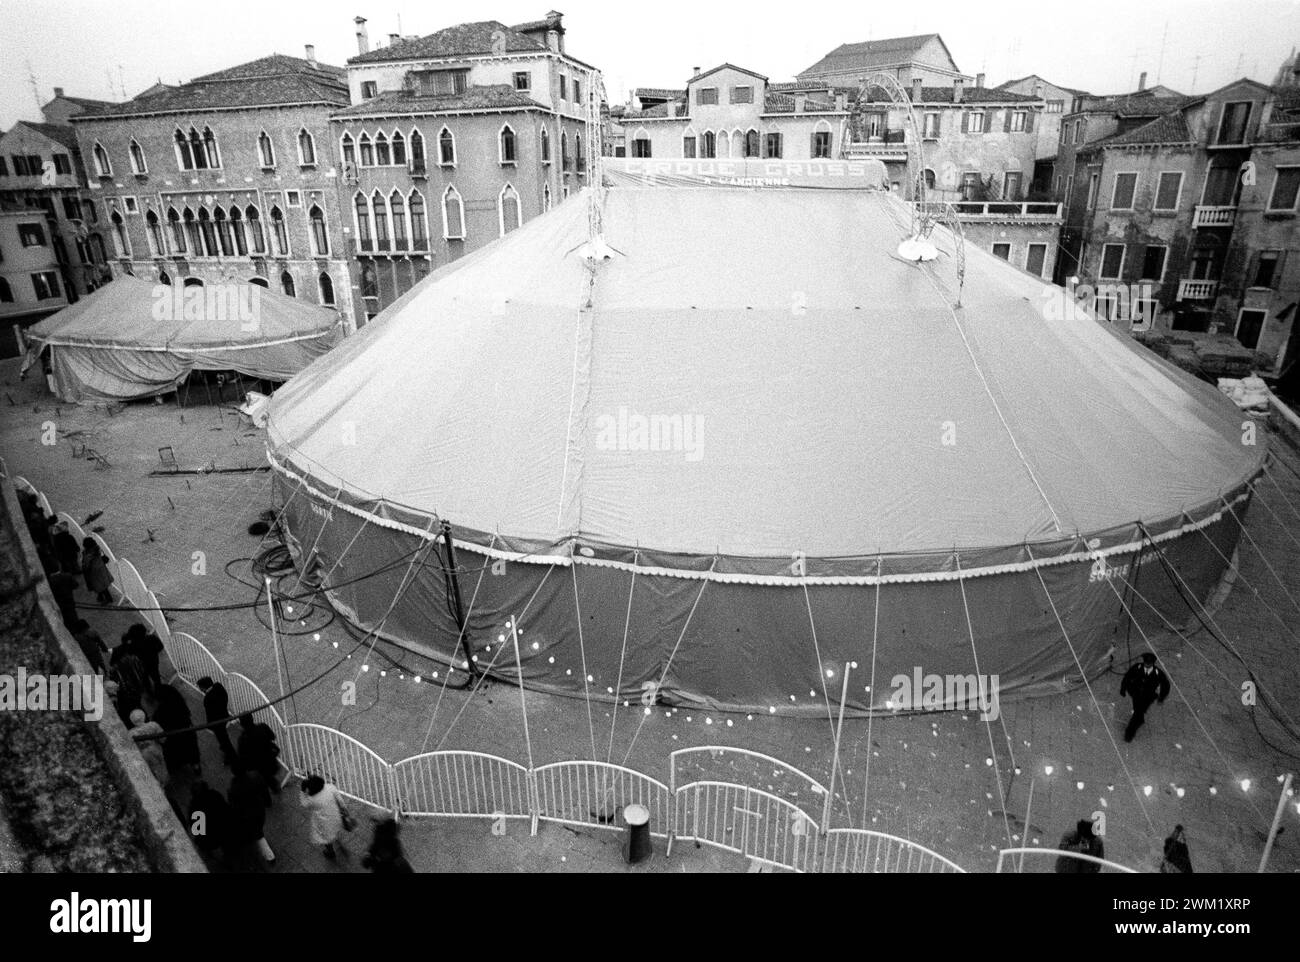 MME4742869 Carnevale di Venezia 1981. Il "Cirque l'Ancienne" (circo vecchio stile) di Alexis Grsss/Carnevale di Venezia 1981. Il Cirque l'Ancienne (circo all'antica) di Alexis Gruss -; (add.info.: Carnevale di Venezia 1981. Il "Cirque l'Ancienne" (circo vecchio stile) di Alexis Grsss/Carnevale di Venezia 1981. Il Cirque l'Ancienne (circo all'antica) di Alexis Gruss -); © Marcello Mencarini. Tutti i diritti riservati 2024. Foto Stock